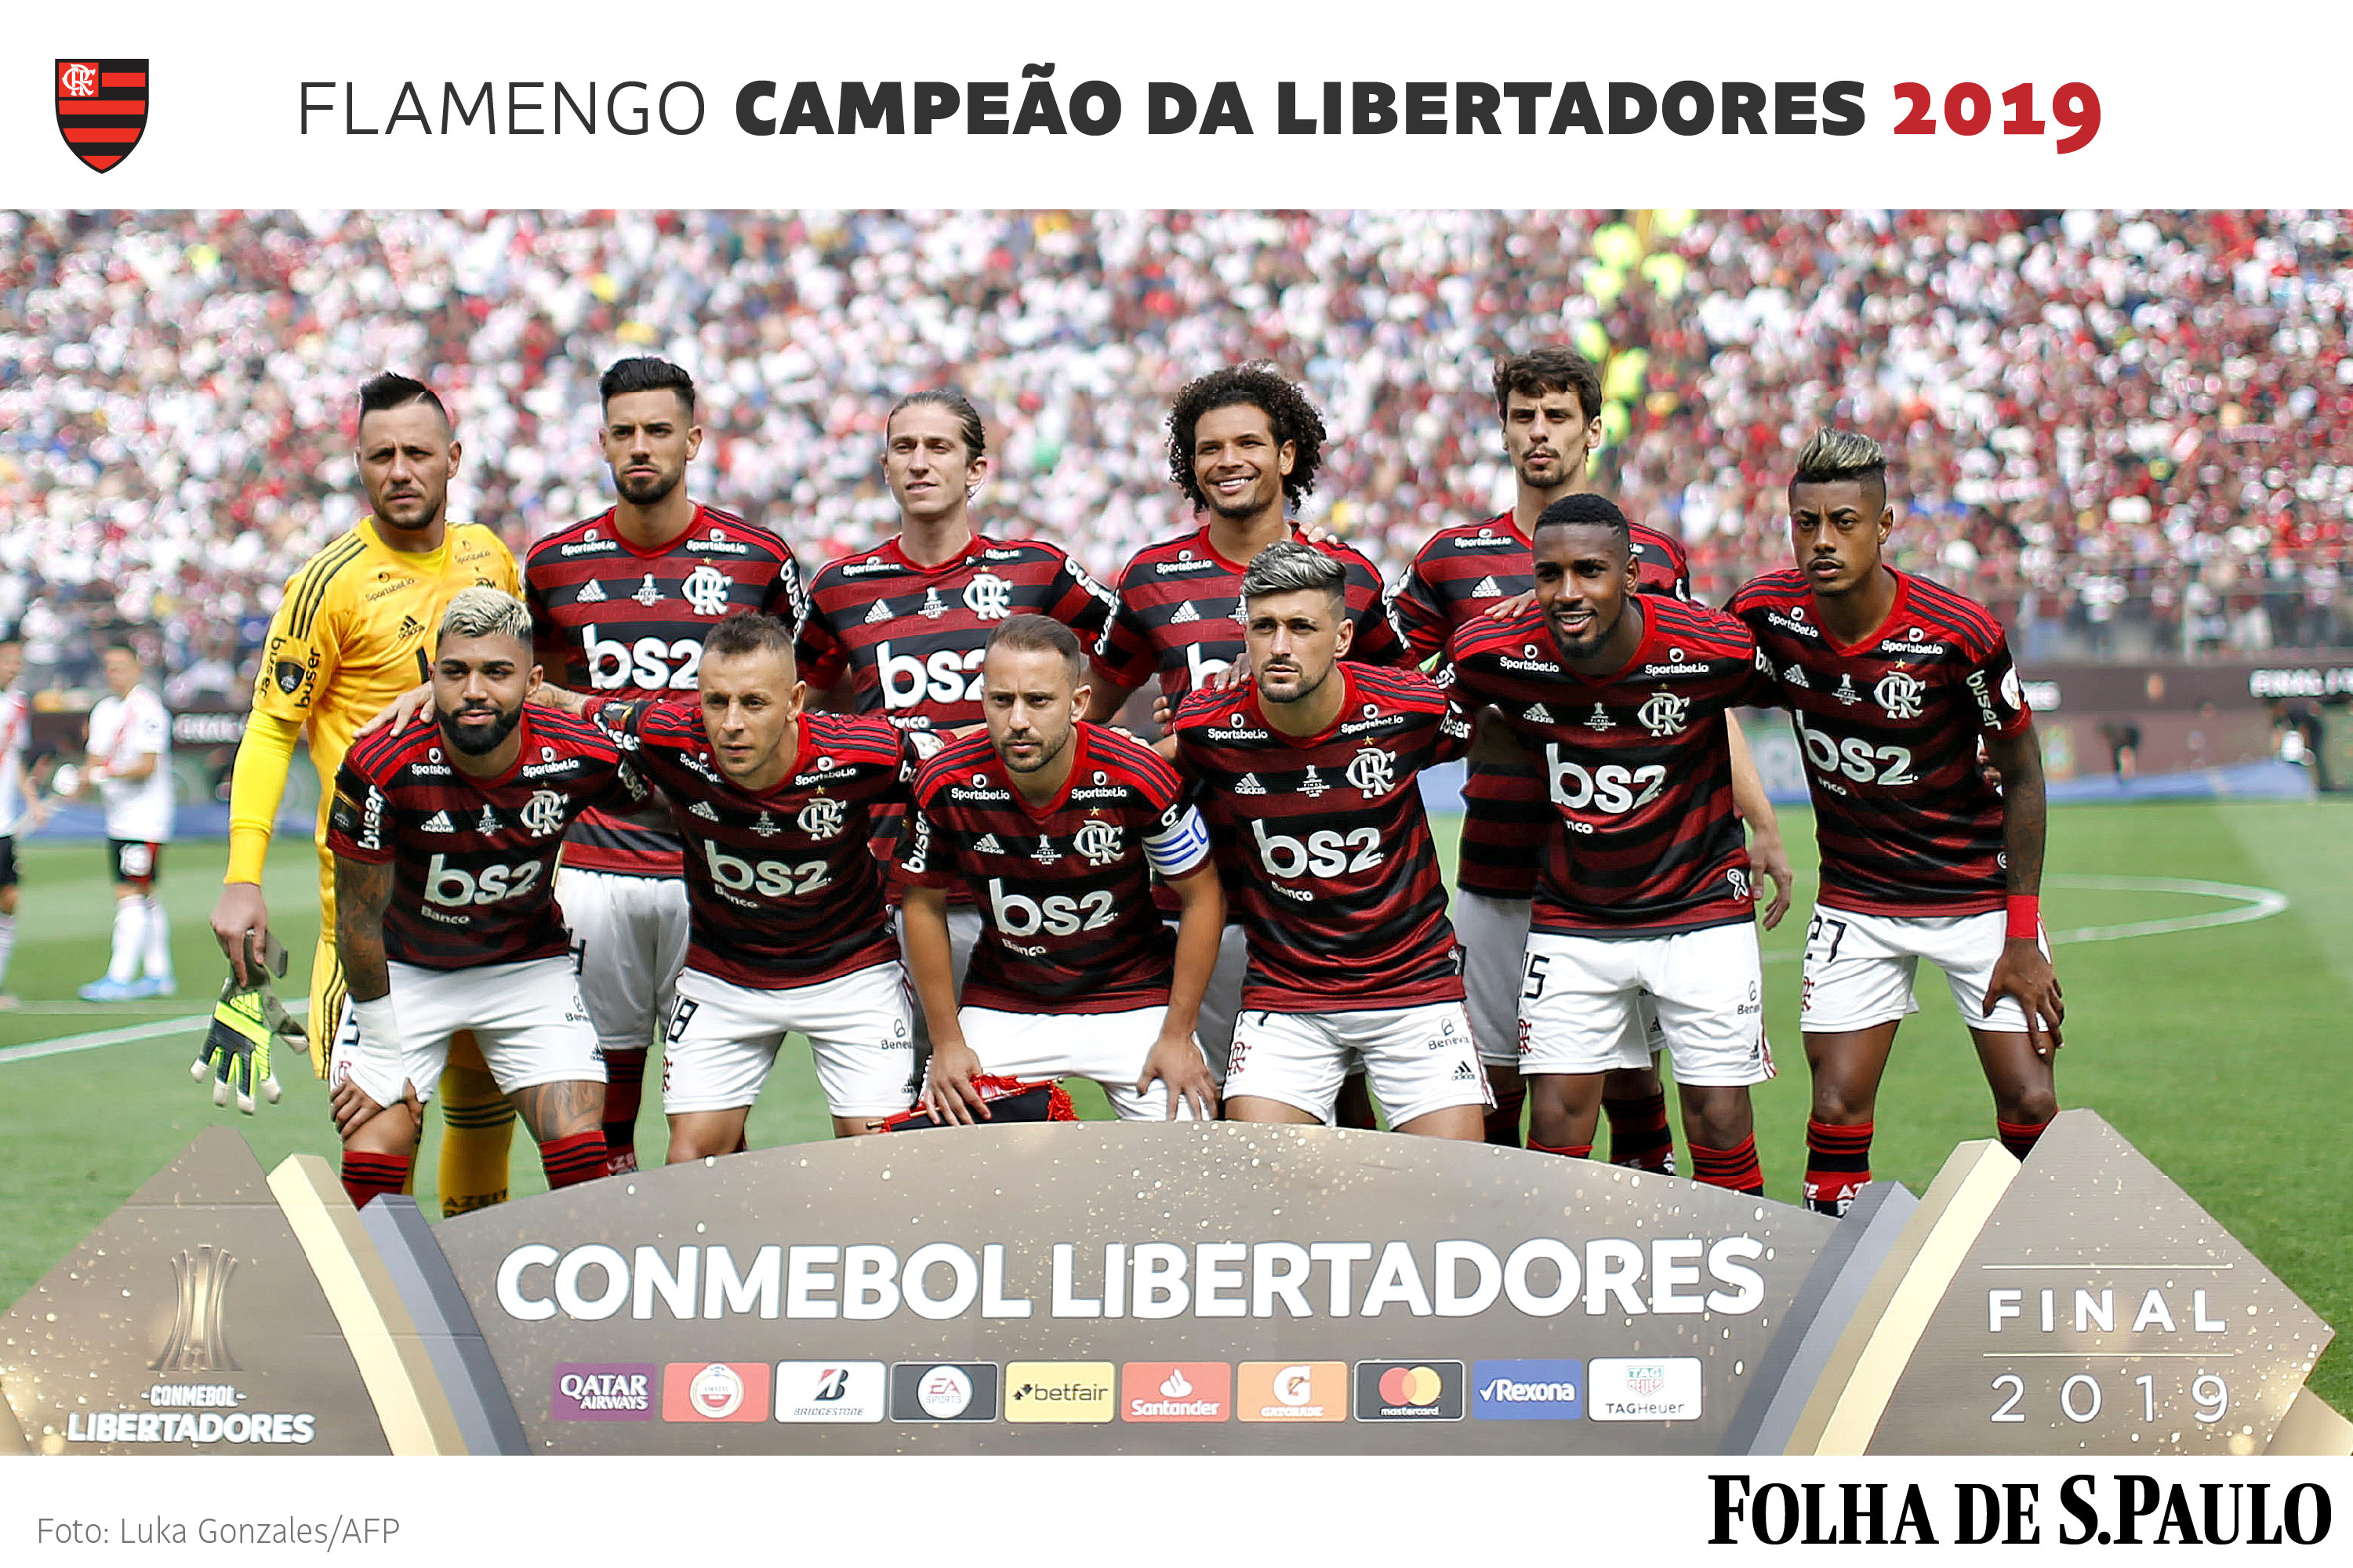 Store Pessimistic cleaner Baixe pôster do Flamengo campeão da Copa Libertadores 2019 - 23/11/2019 -  Esporte - Folha